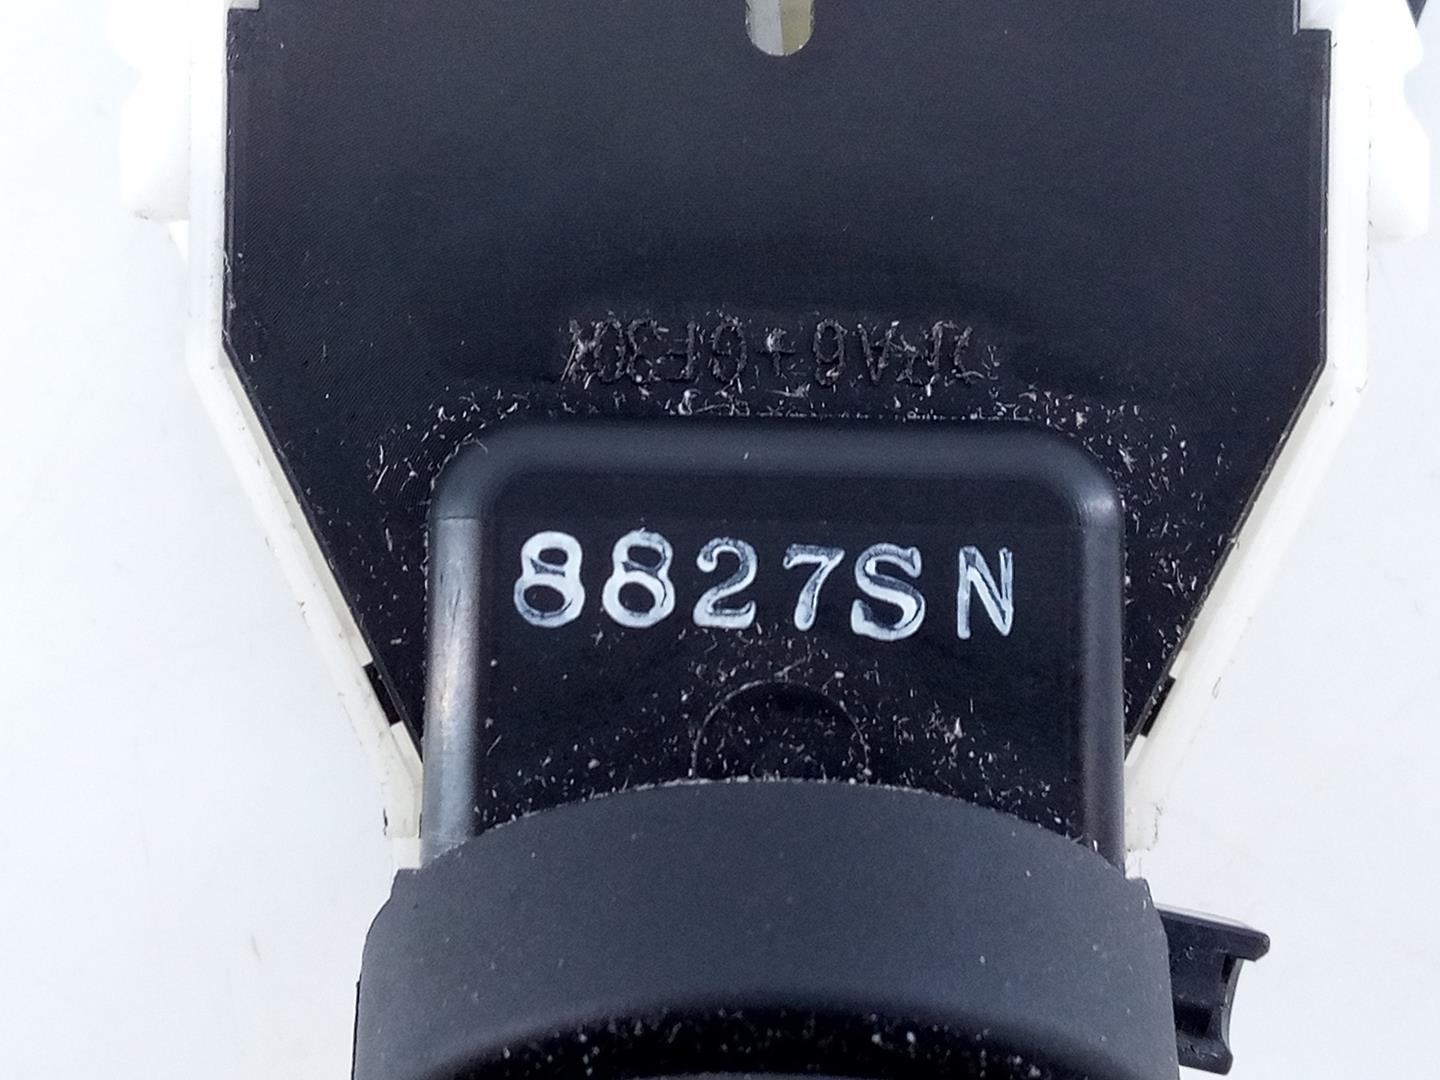 NISSAN X-Trail T31 (2007-2014) Indicator Wiper Stalk Switch 8827SN, E3-B4-22-2 23292022